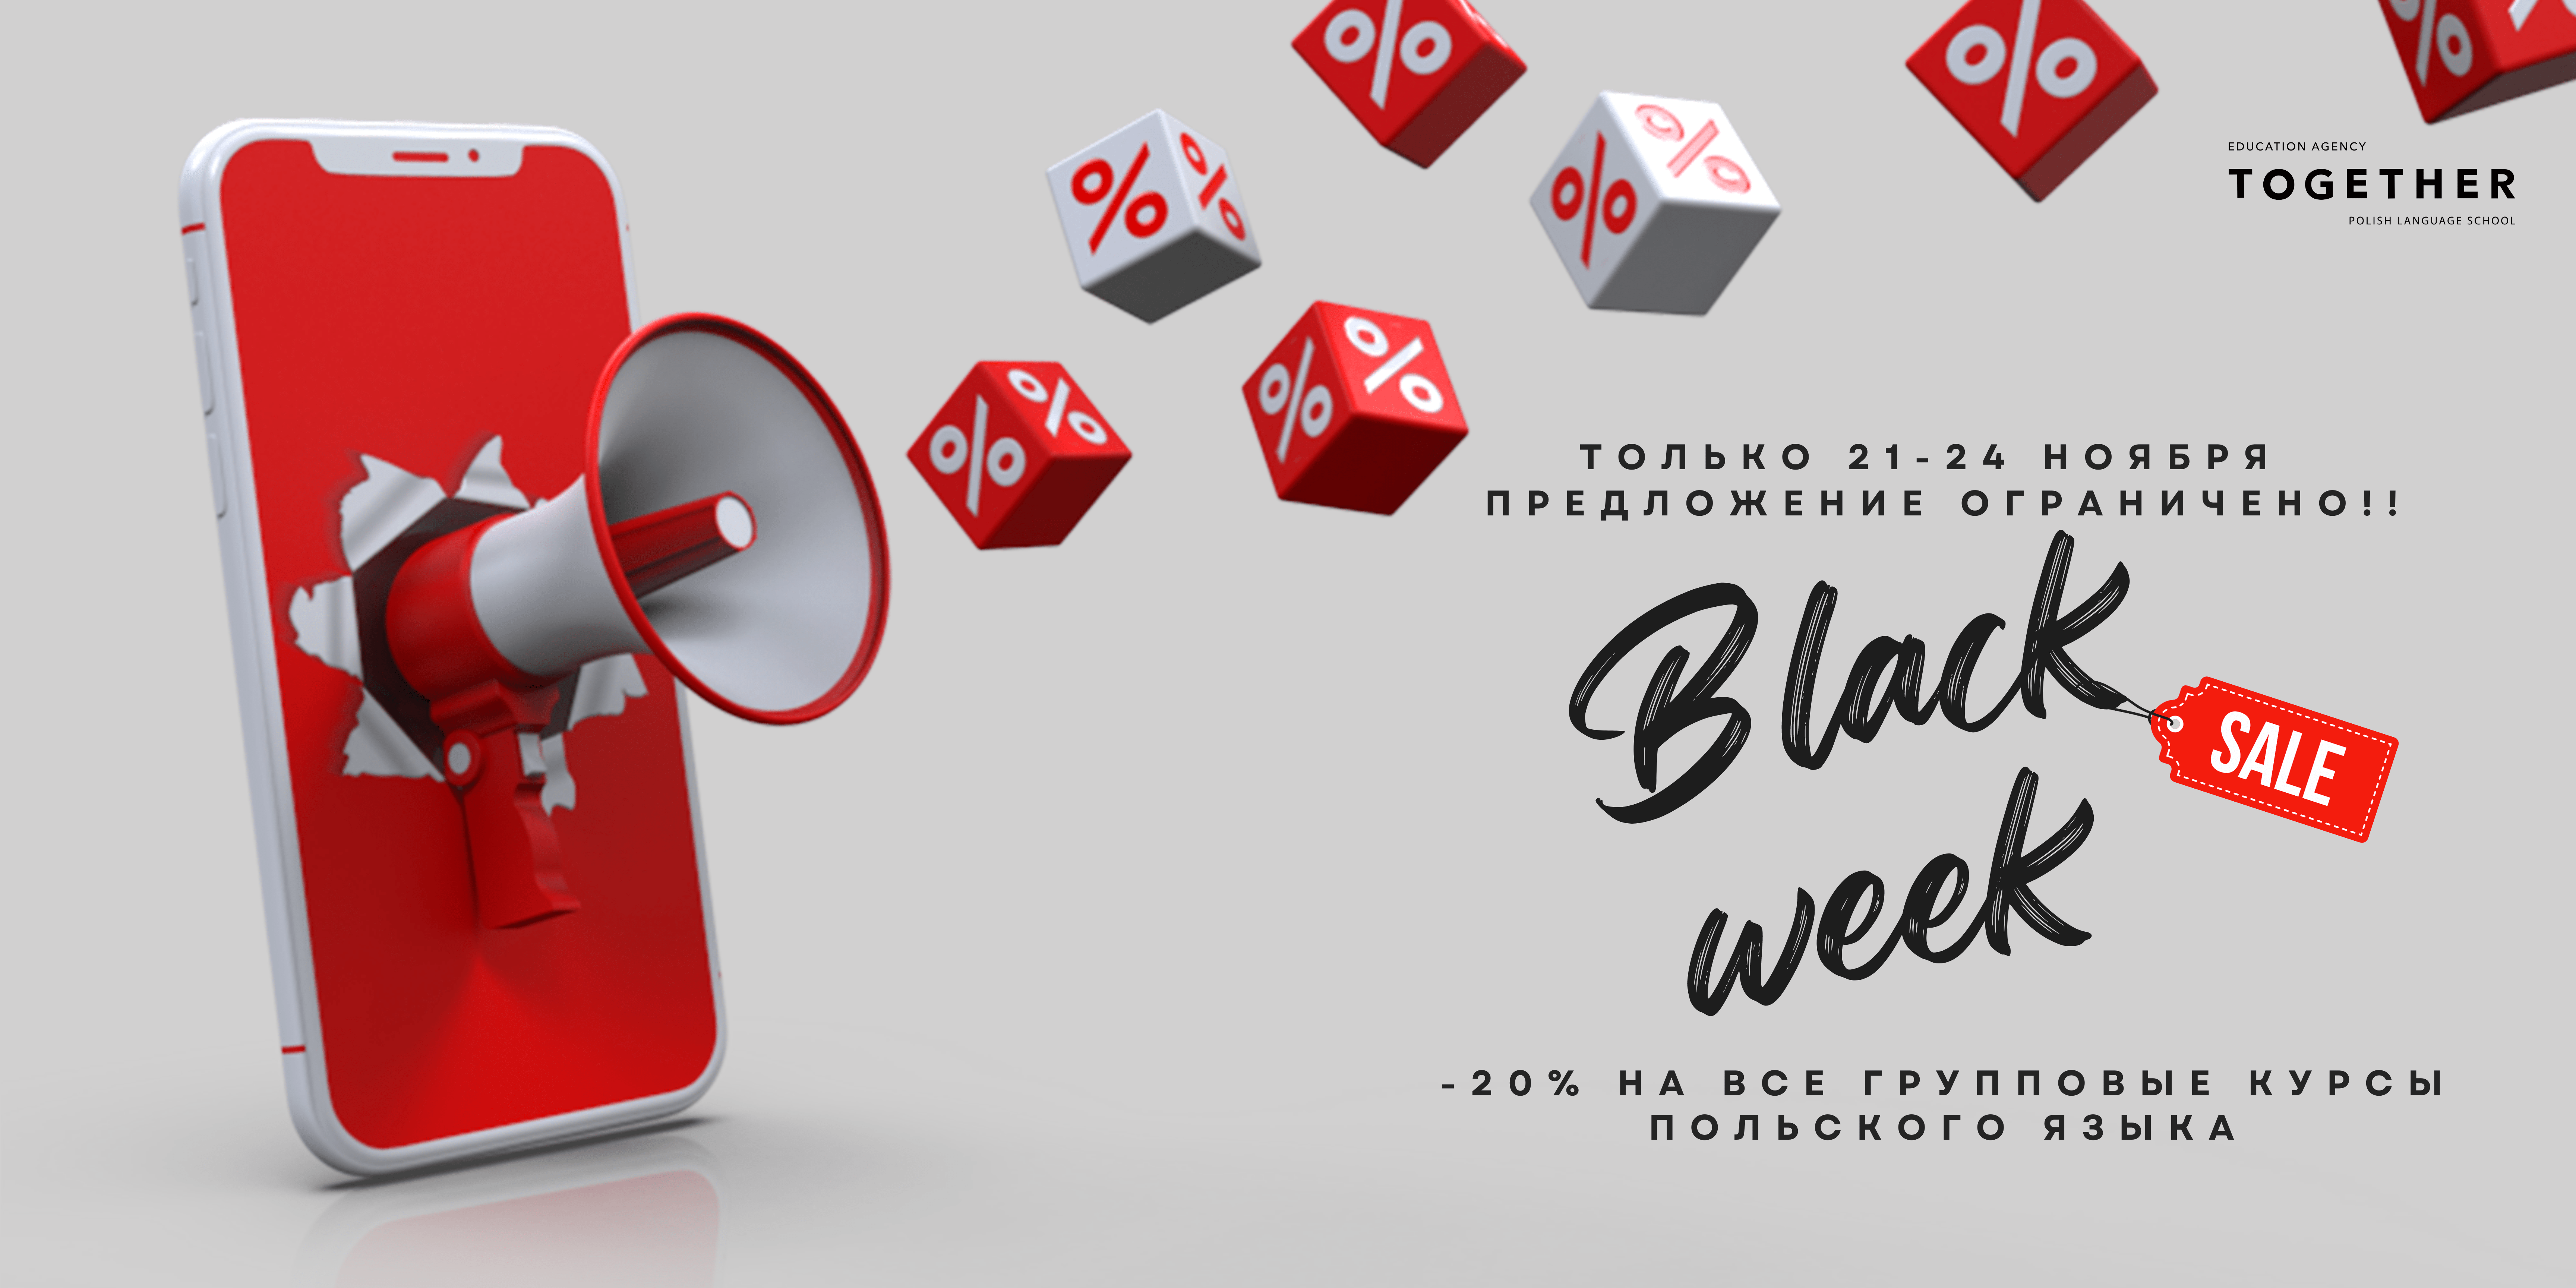 Black Week - Скидки на курсы польского языка